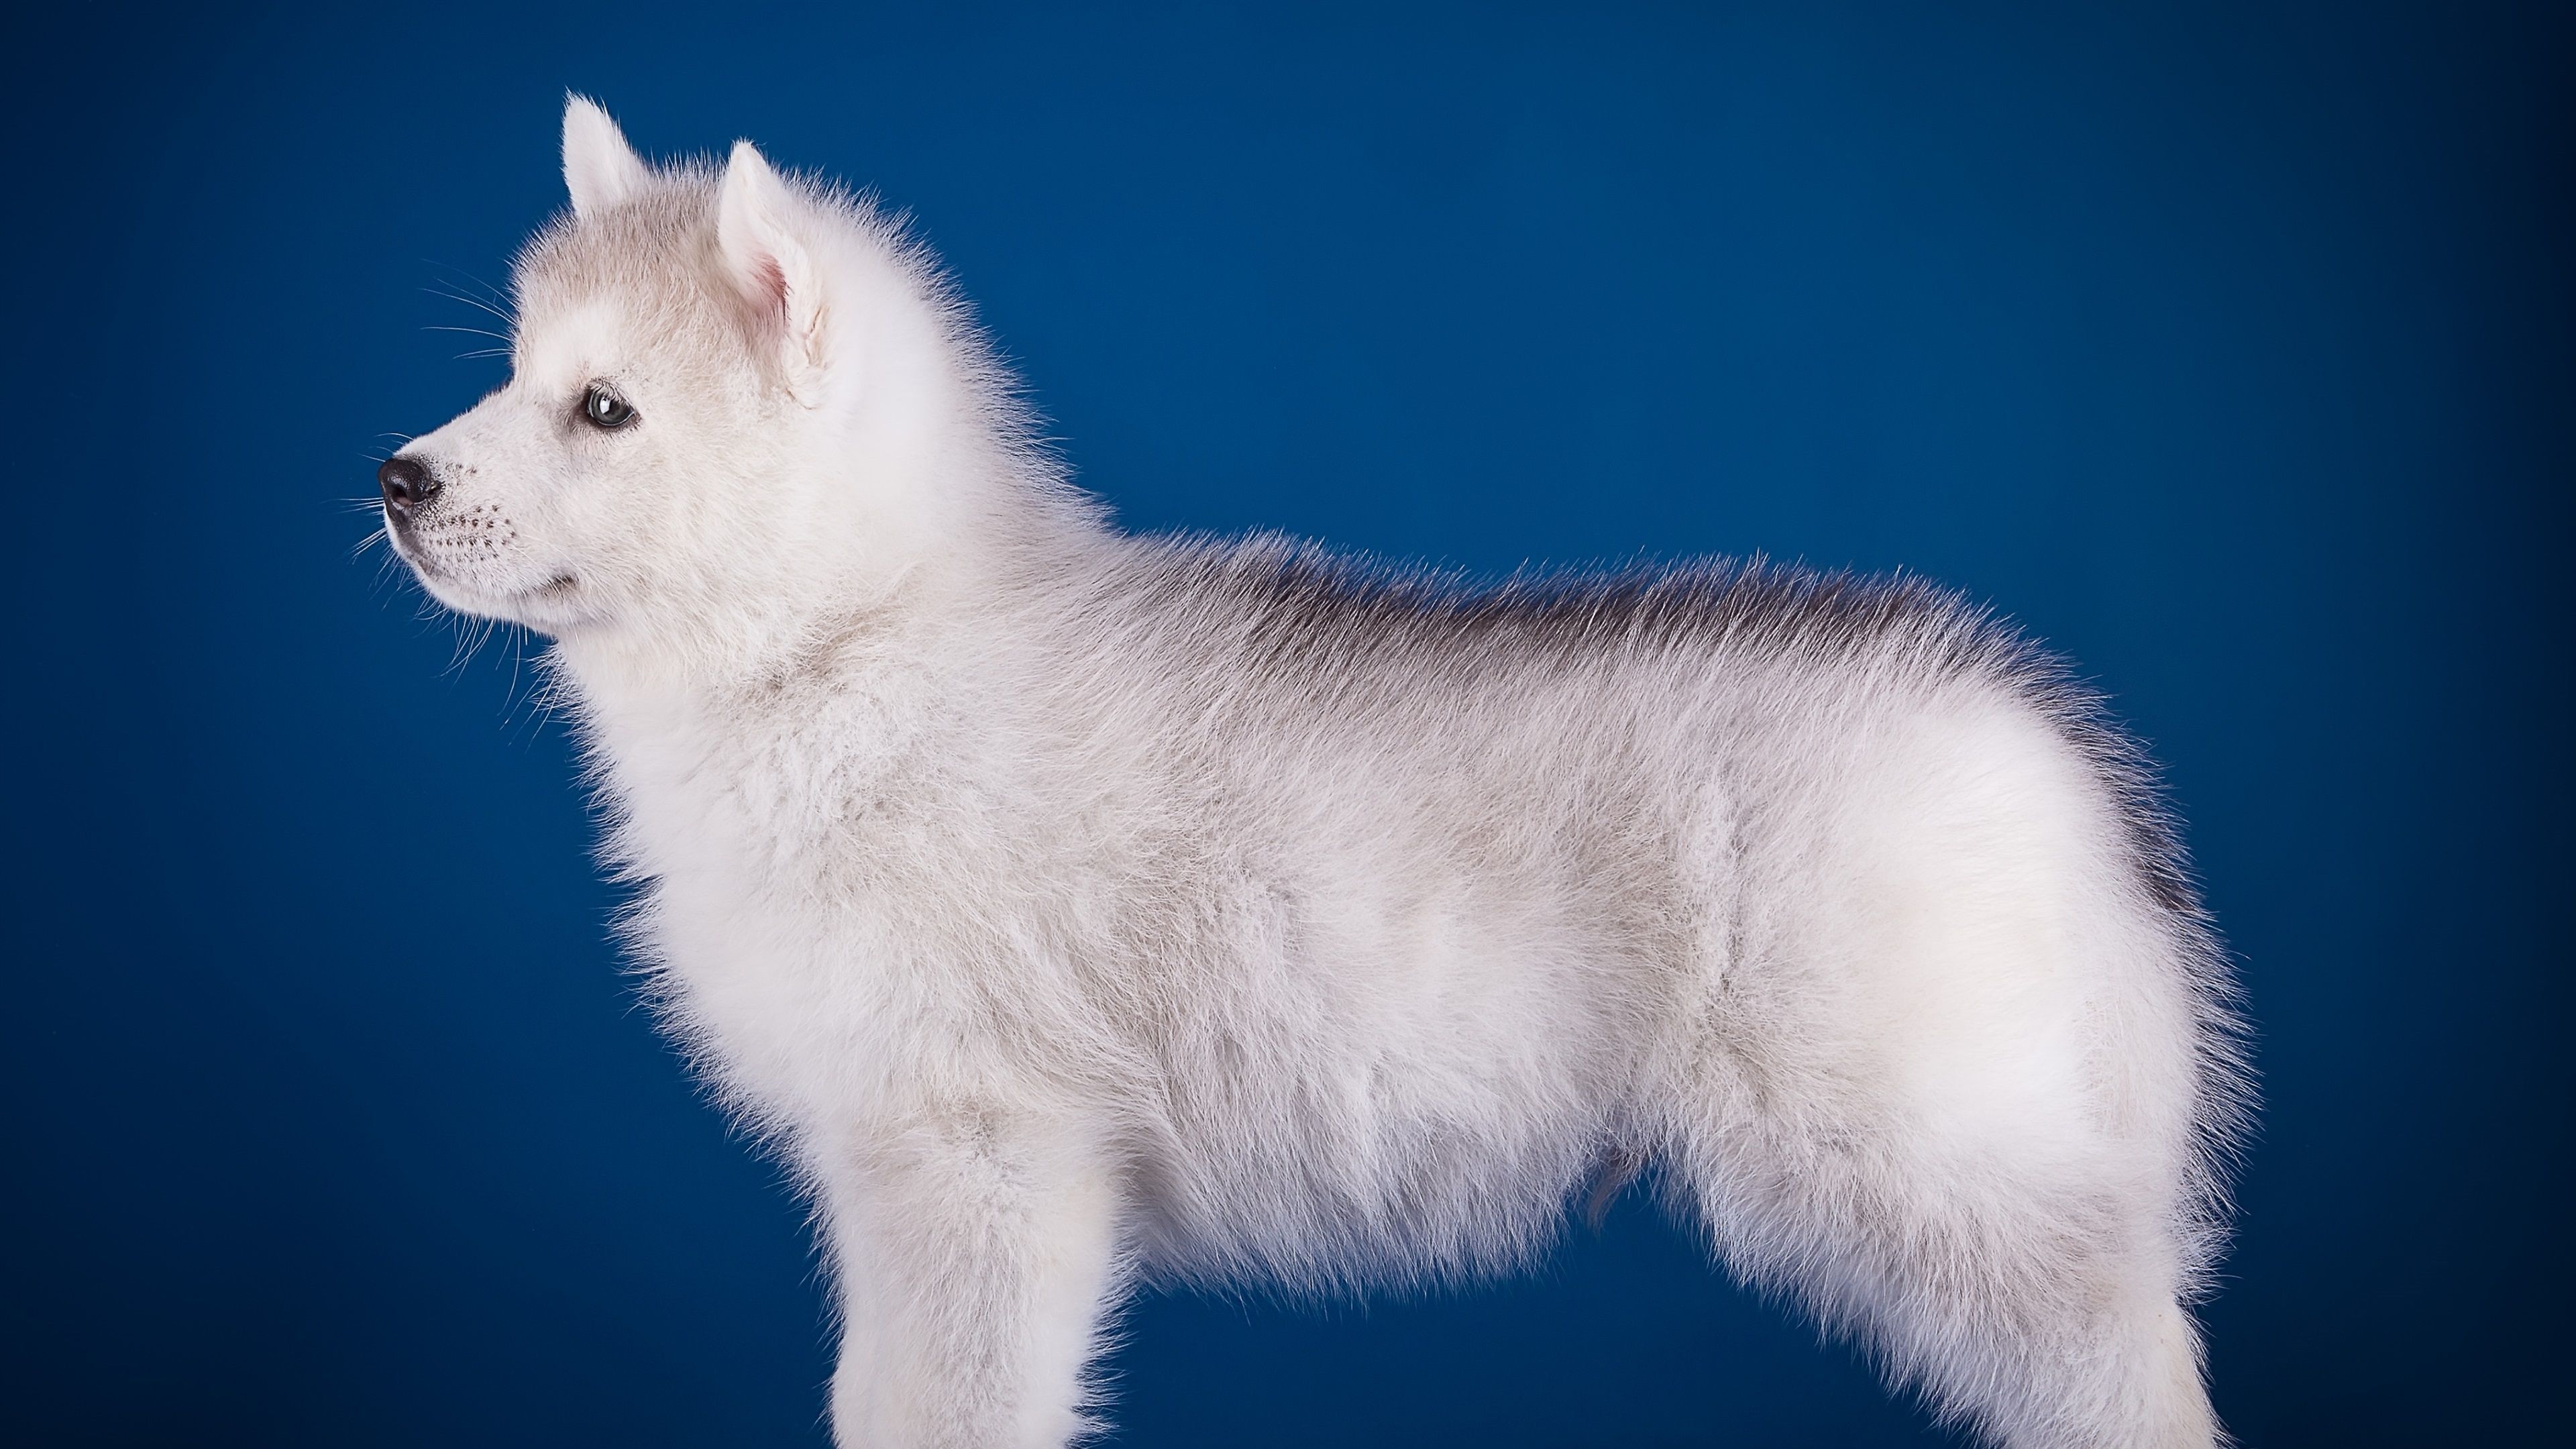 عکس کامل بدن سگ سفید پشمالو زیبا از زاویه کناری